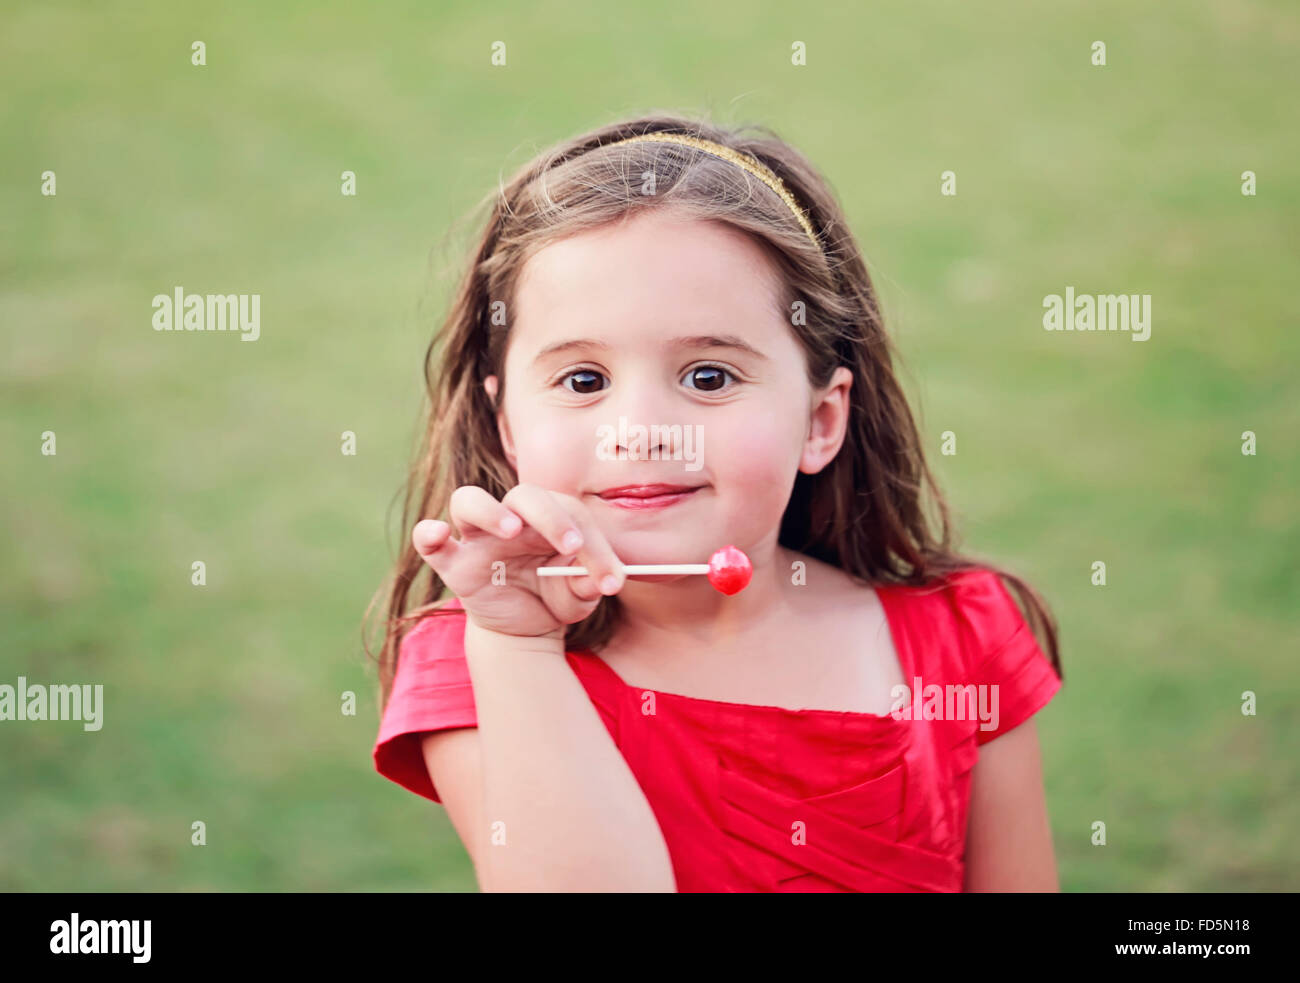 Kleines Mädchen in einem leuchtend roten Kleid einen leuchtenden roten Lutscher während lächelnd in die Kamera halten. Stockfoto